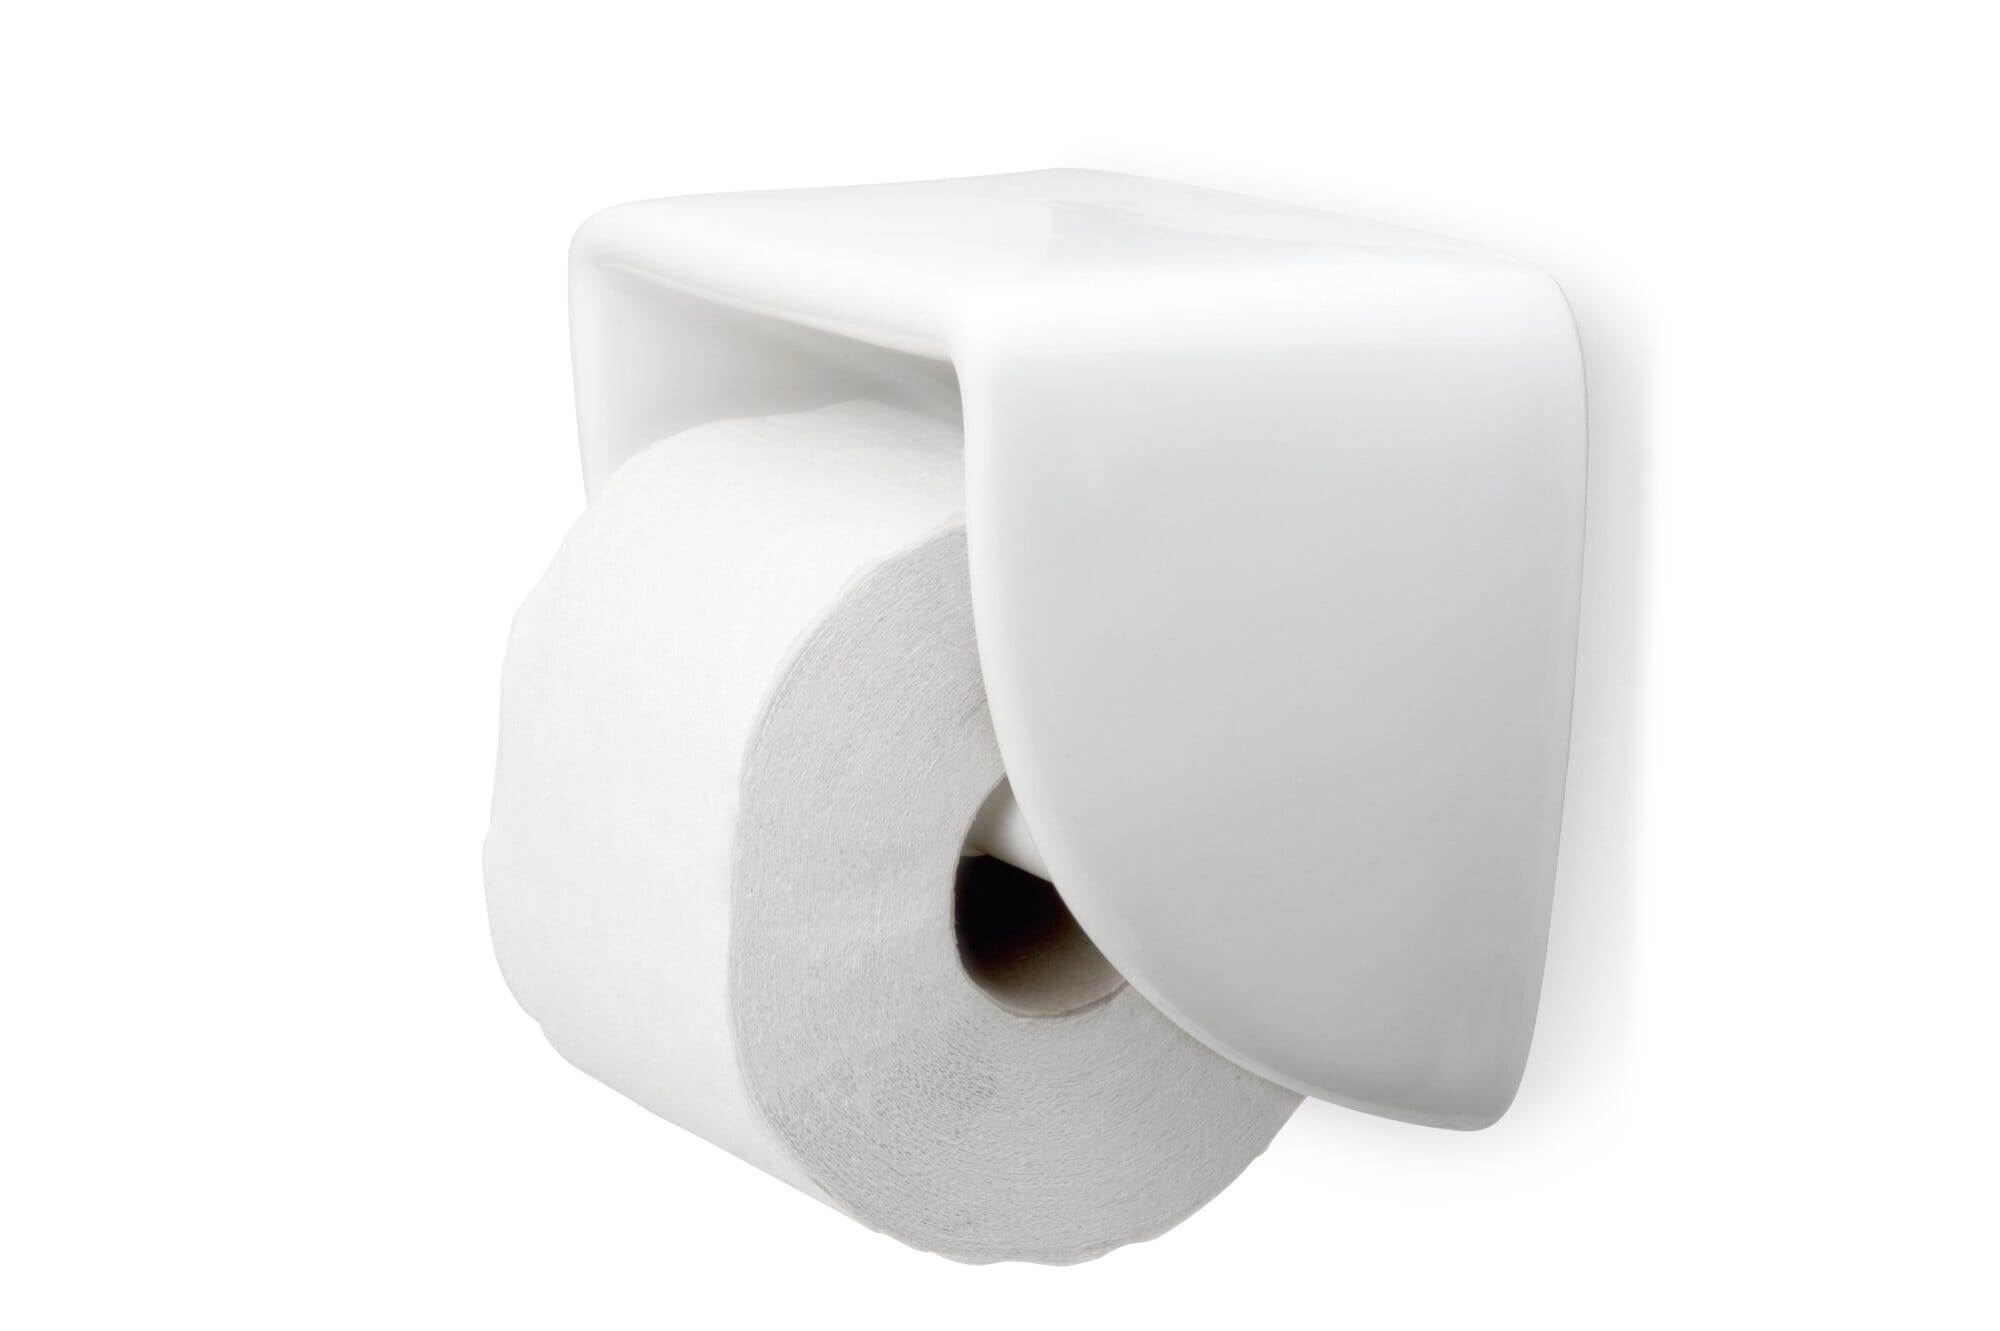 flex surelock toilet paper holder